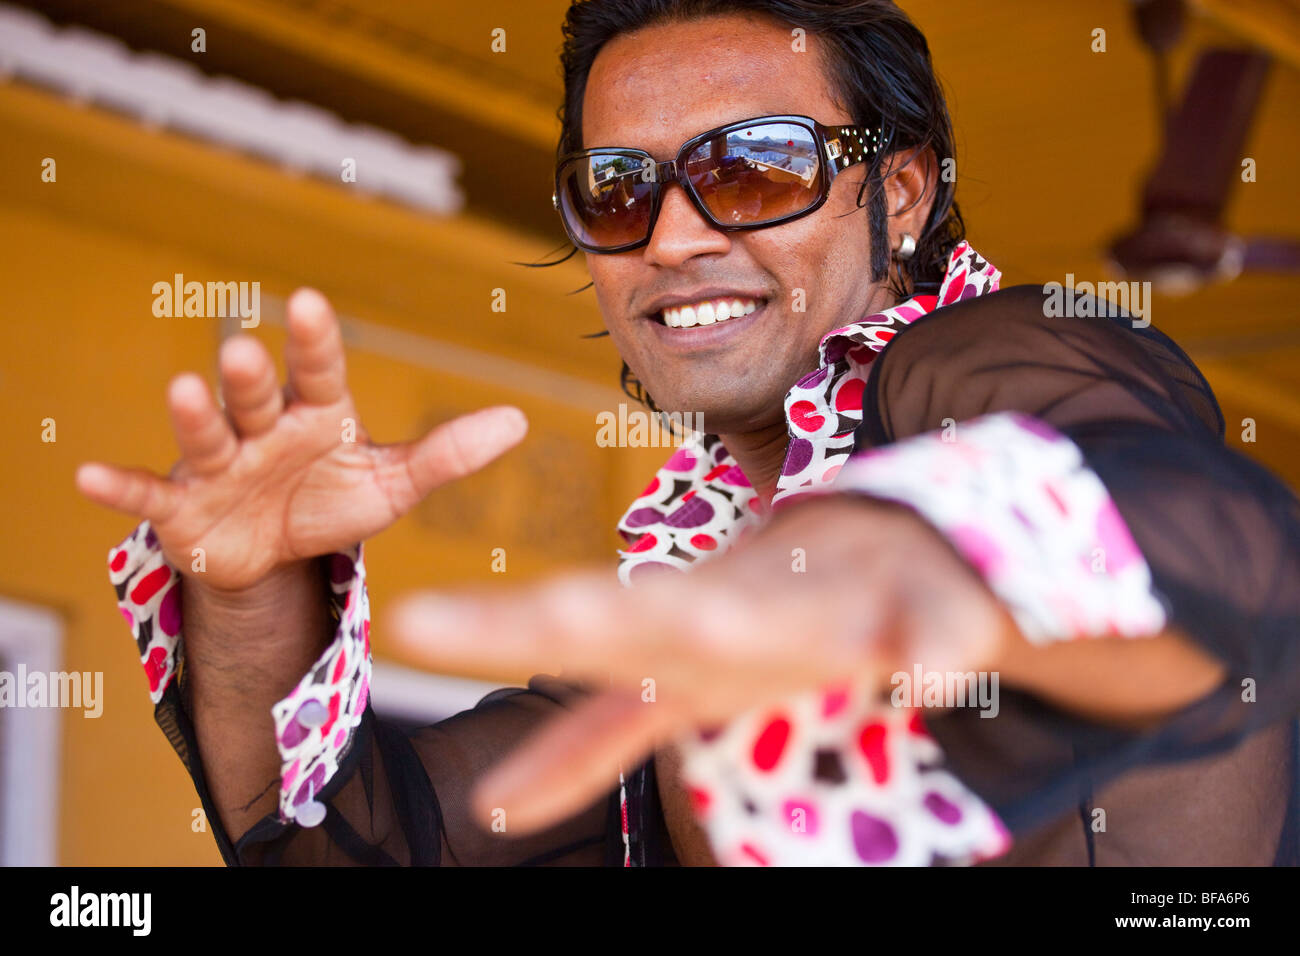 Indischer Mann, aufstrebende Modell und Bollywood-Schauspieler in Mumbai Indien Stockfoto